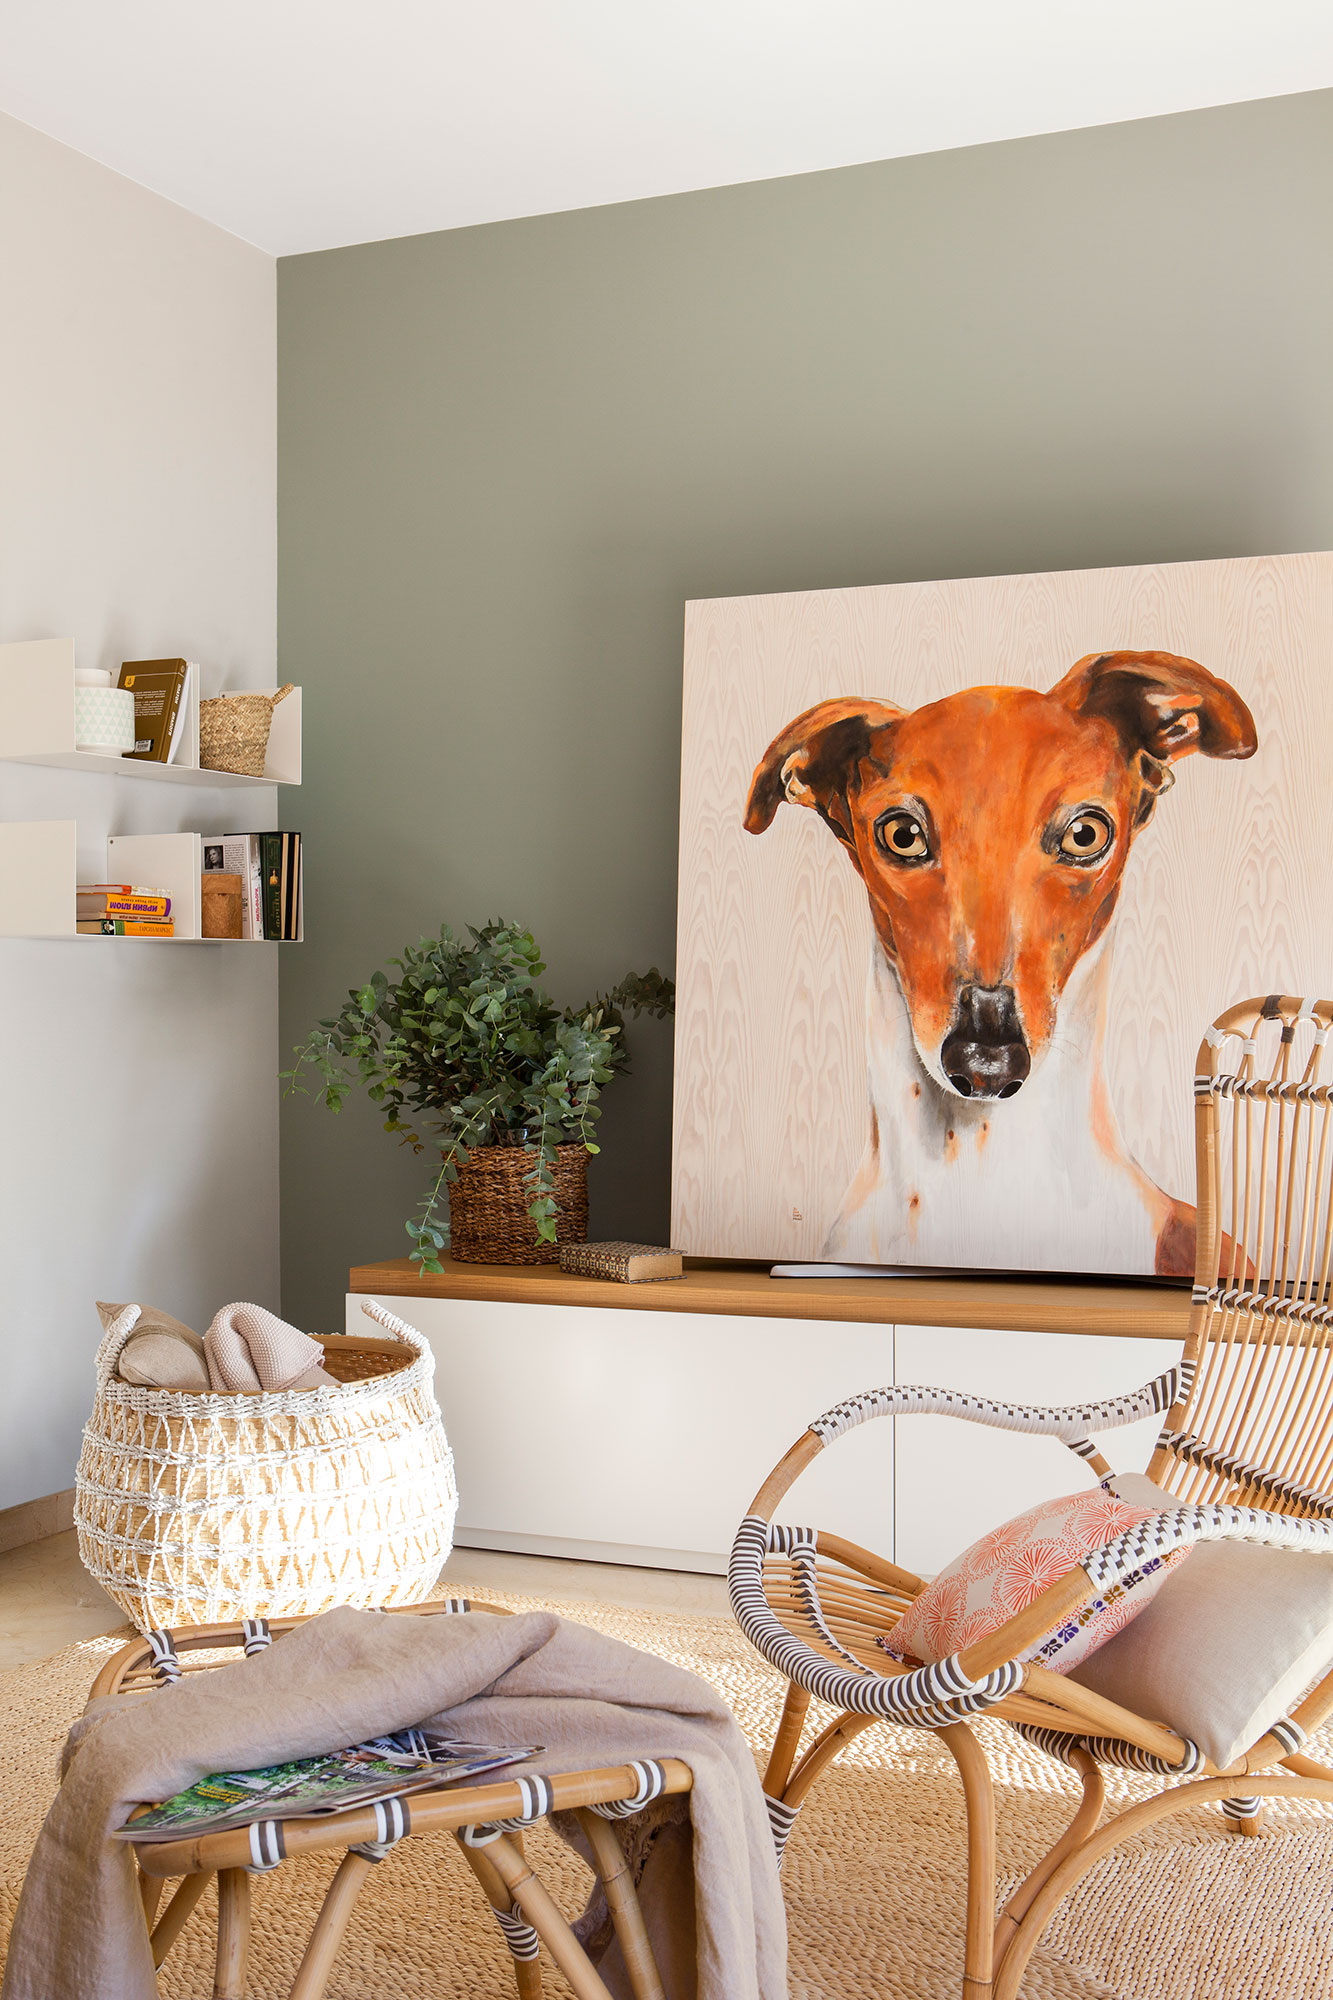 Salón decorado con alfombra de fibras, gran cuadro de un perro, pared verde y cesto con mantas.